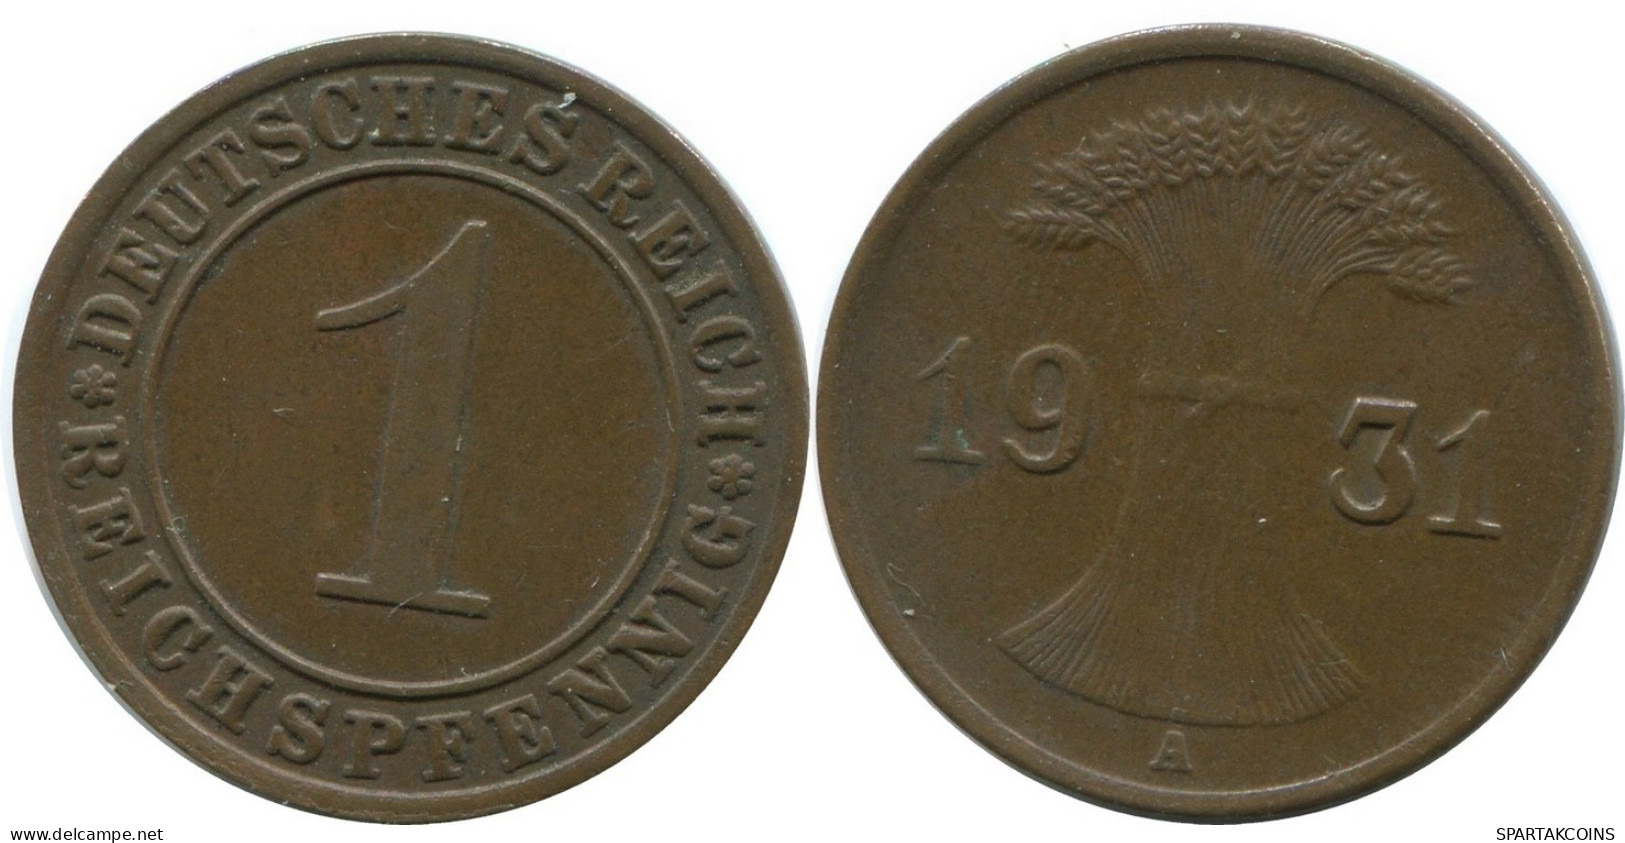 1 REICHSPFENNIG 1931 A DEUTSCHLAND Münze GERMANY #AD451.9.D - 1 Rentenpfennig & 1 Reichspfennig